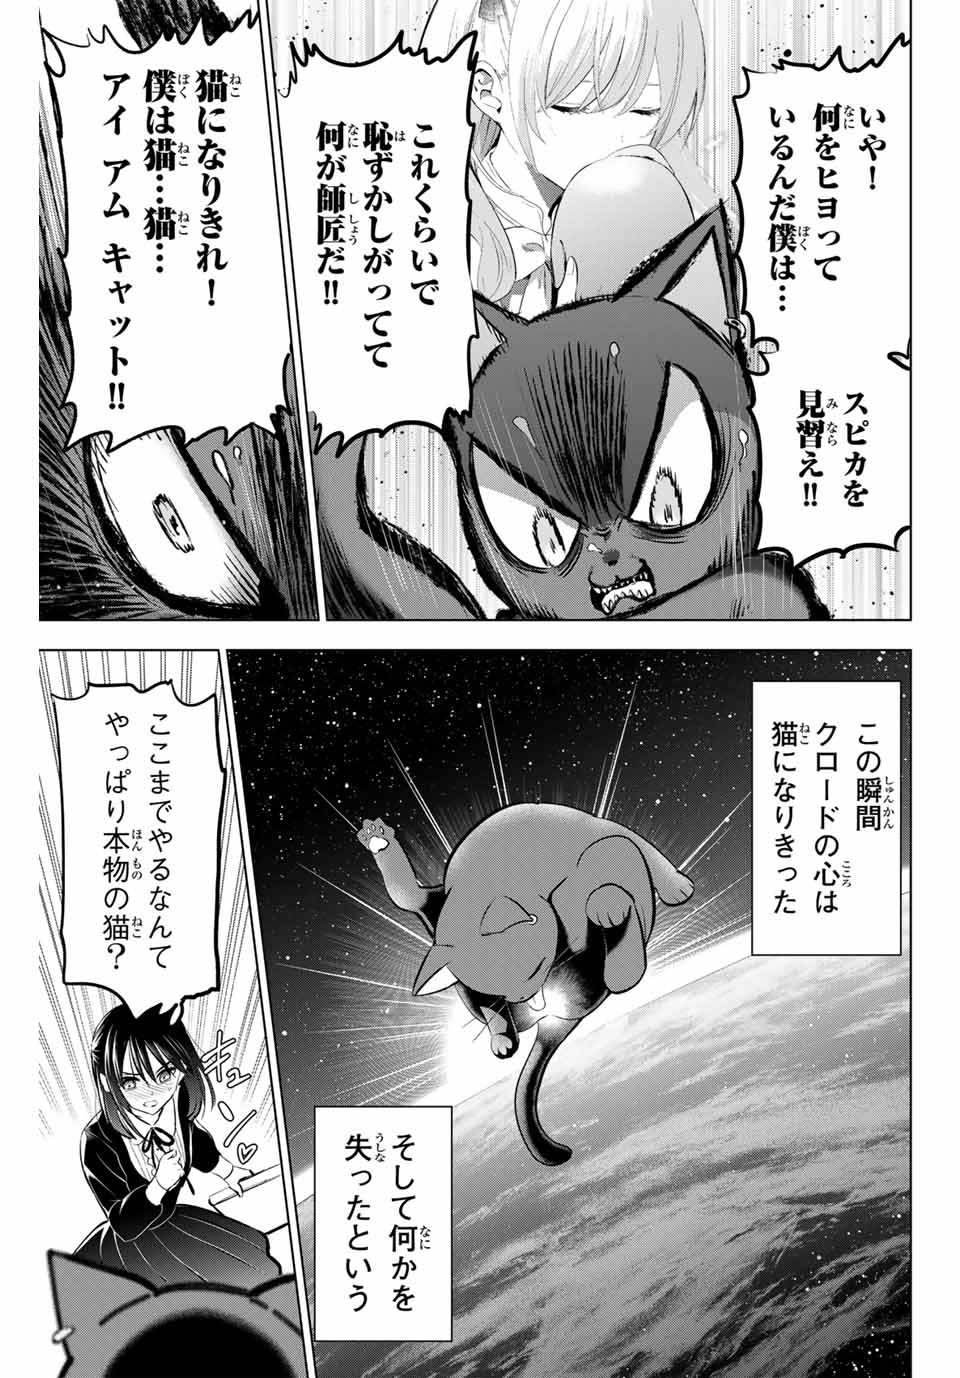 Kuroneko to Majo no Kyoushitsu - Chapter 61 - Page 17